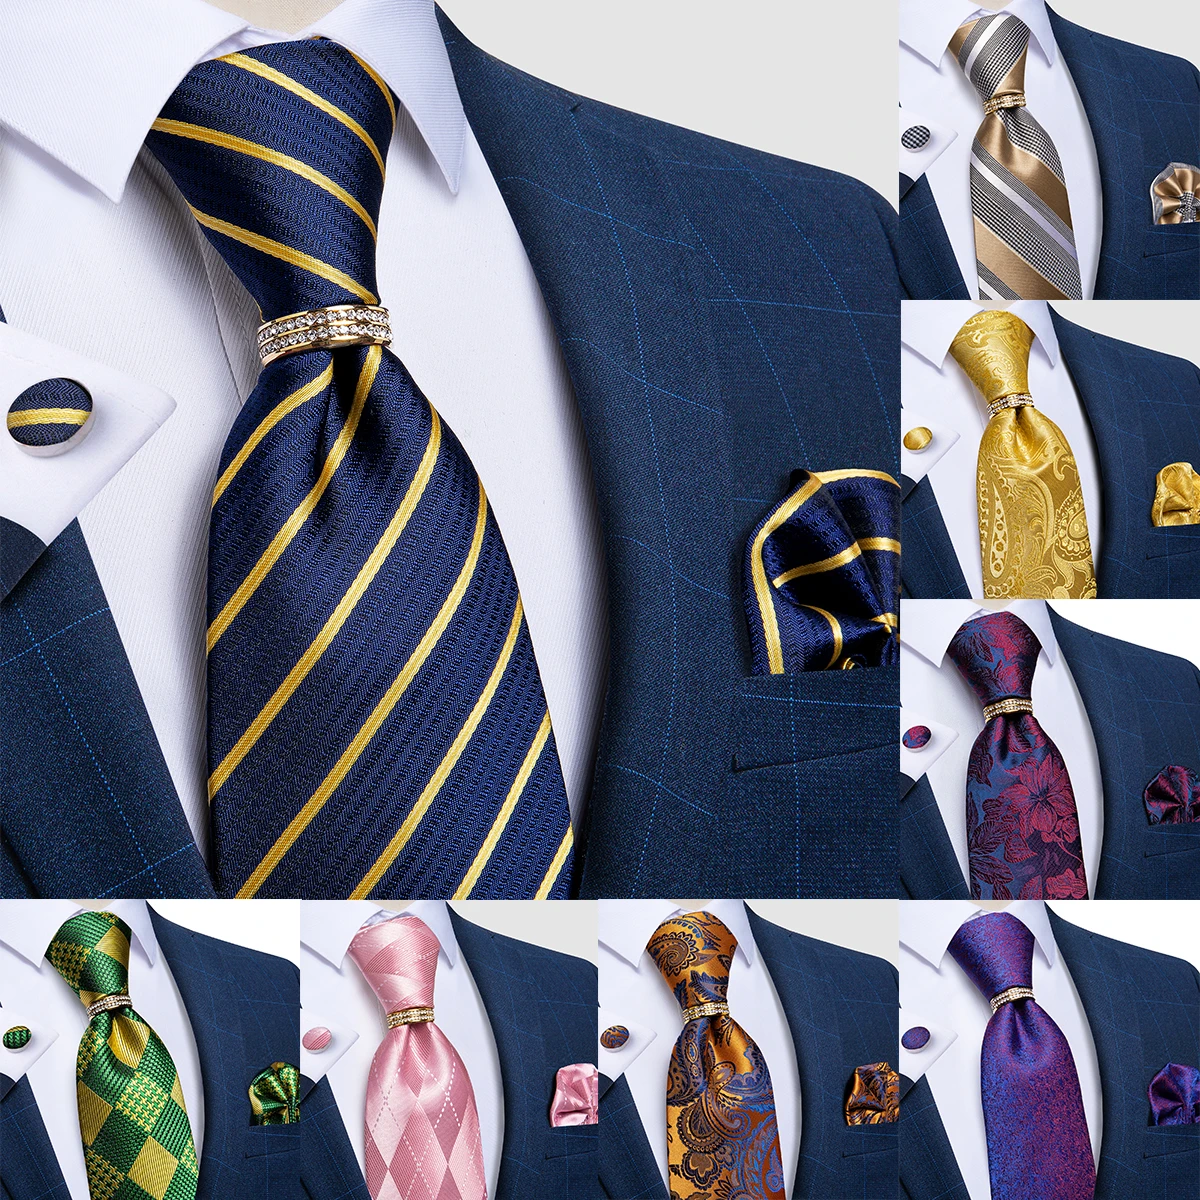 S&W SHLAX&WING Conjuntos de corbata para hombre azul marino azul marino naranja paisley corbata con pañuelo de bolsillo 